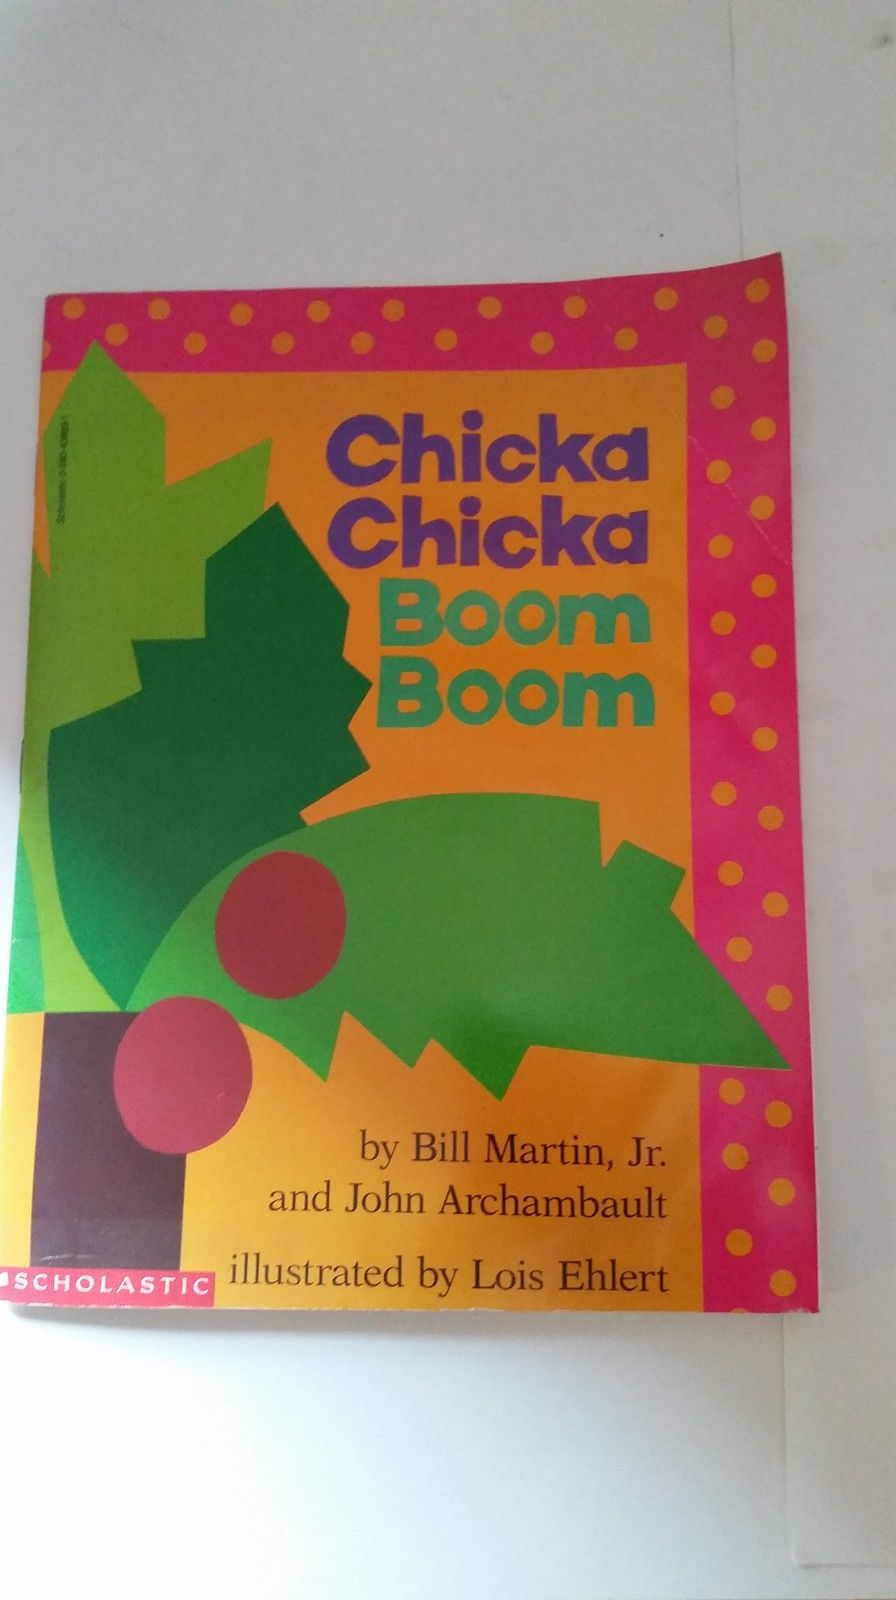 Chicka Chicka Boom Boom by Bill Martin Jr.